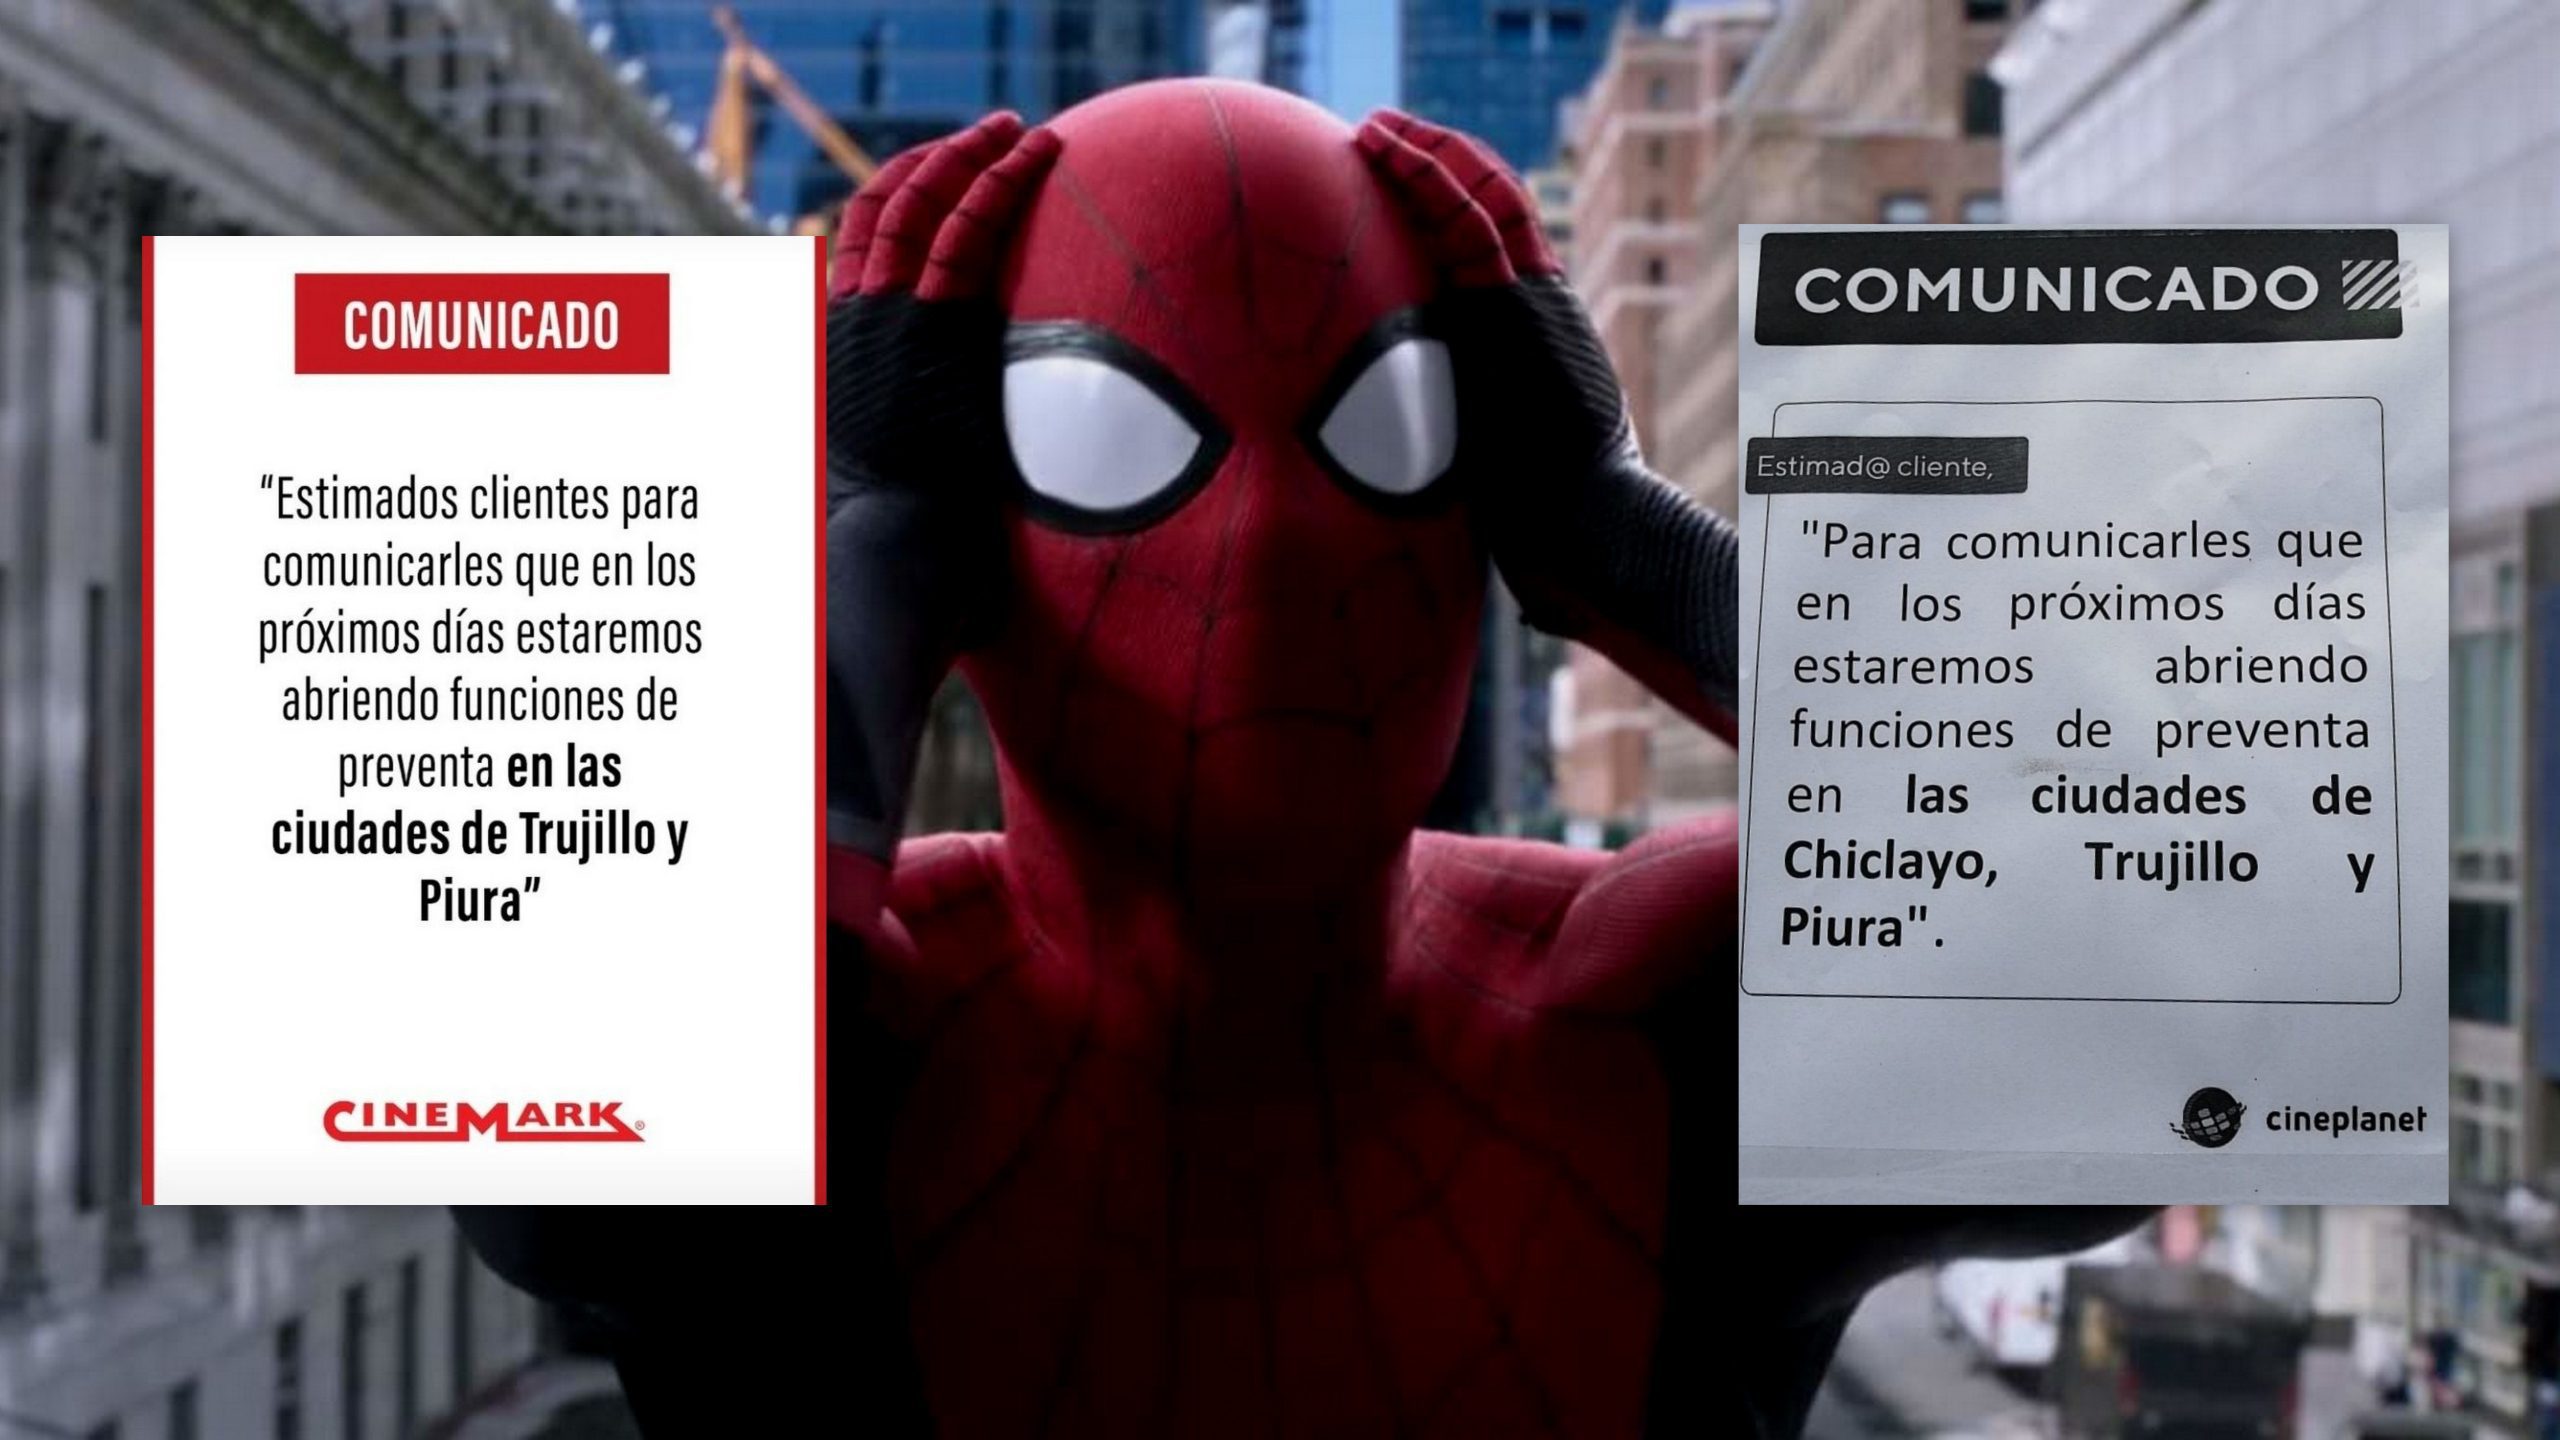 Spiderman No Way Home»: preventa se retrasa en Piura - Noticias Piura 